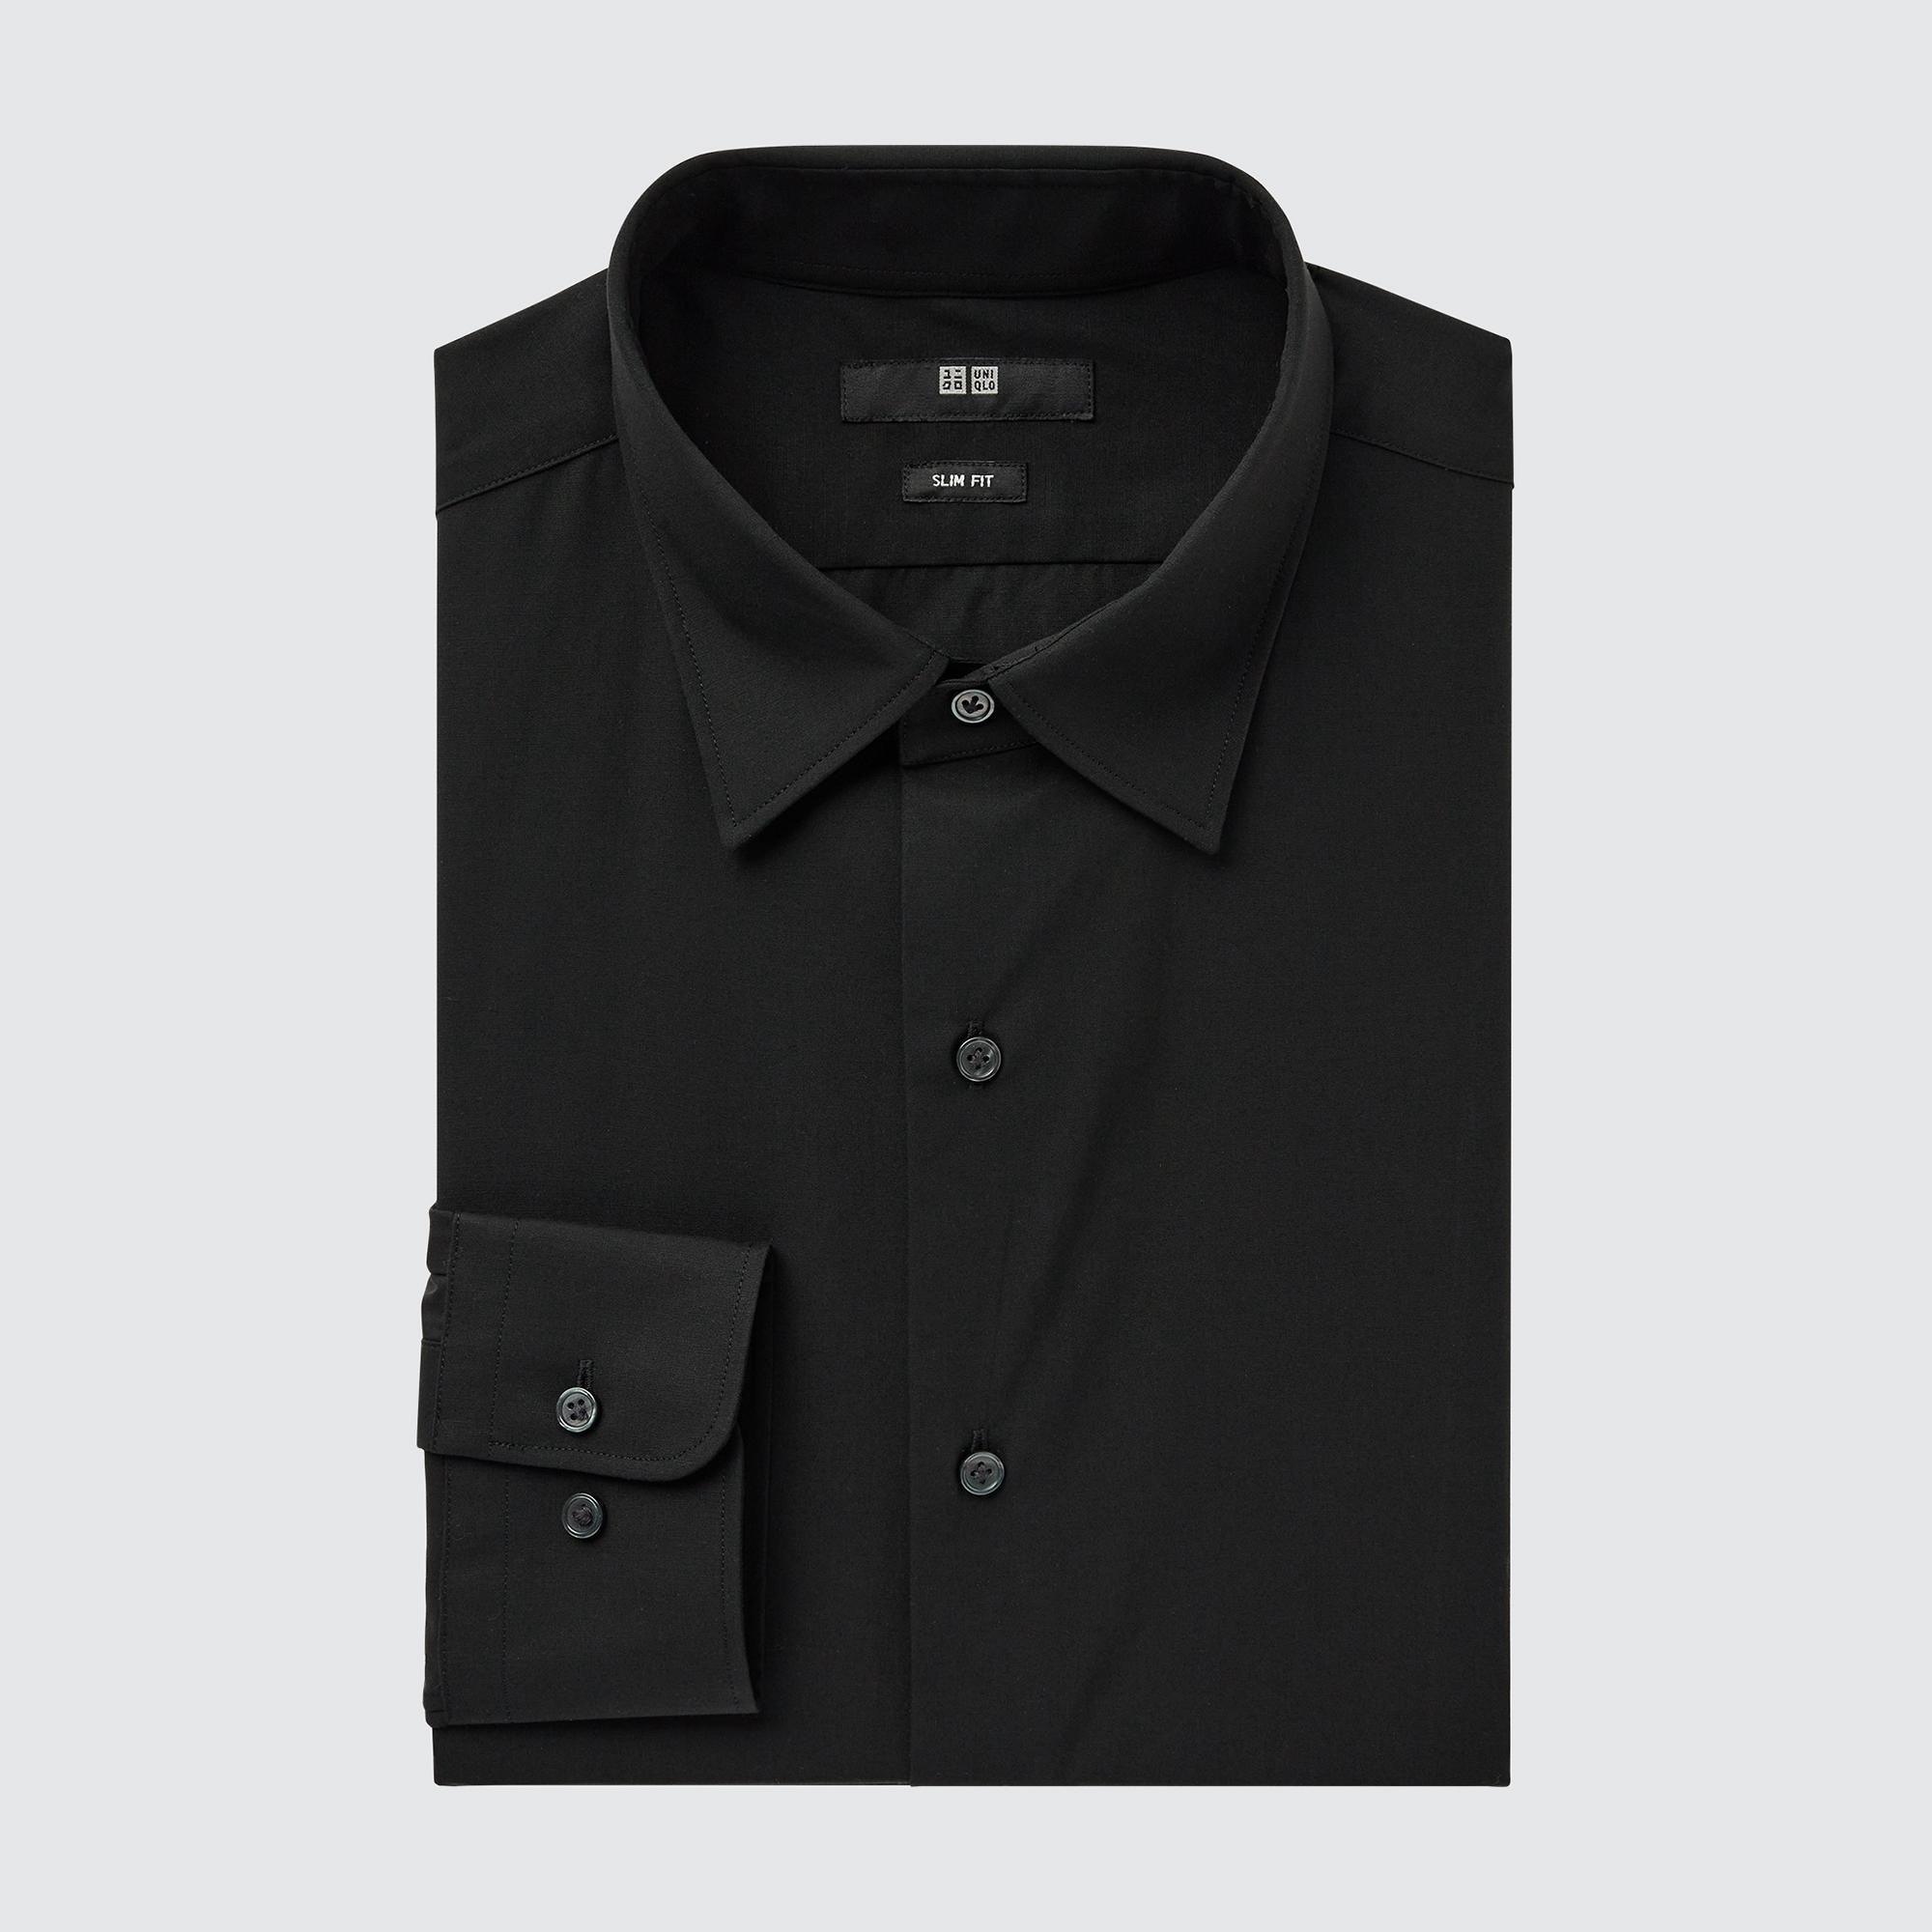 Рубашка мужская UNIQLO 456232COL09 черная XL (доставка из-за рубежа)